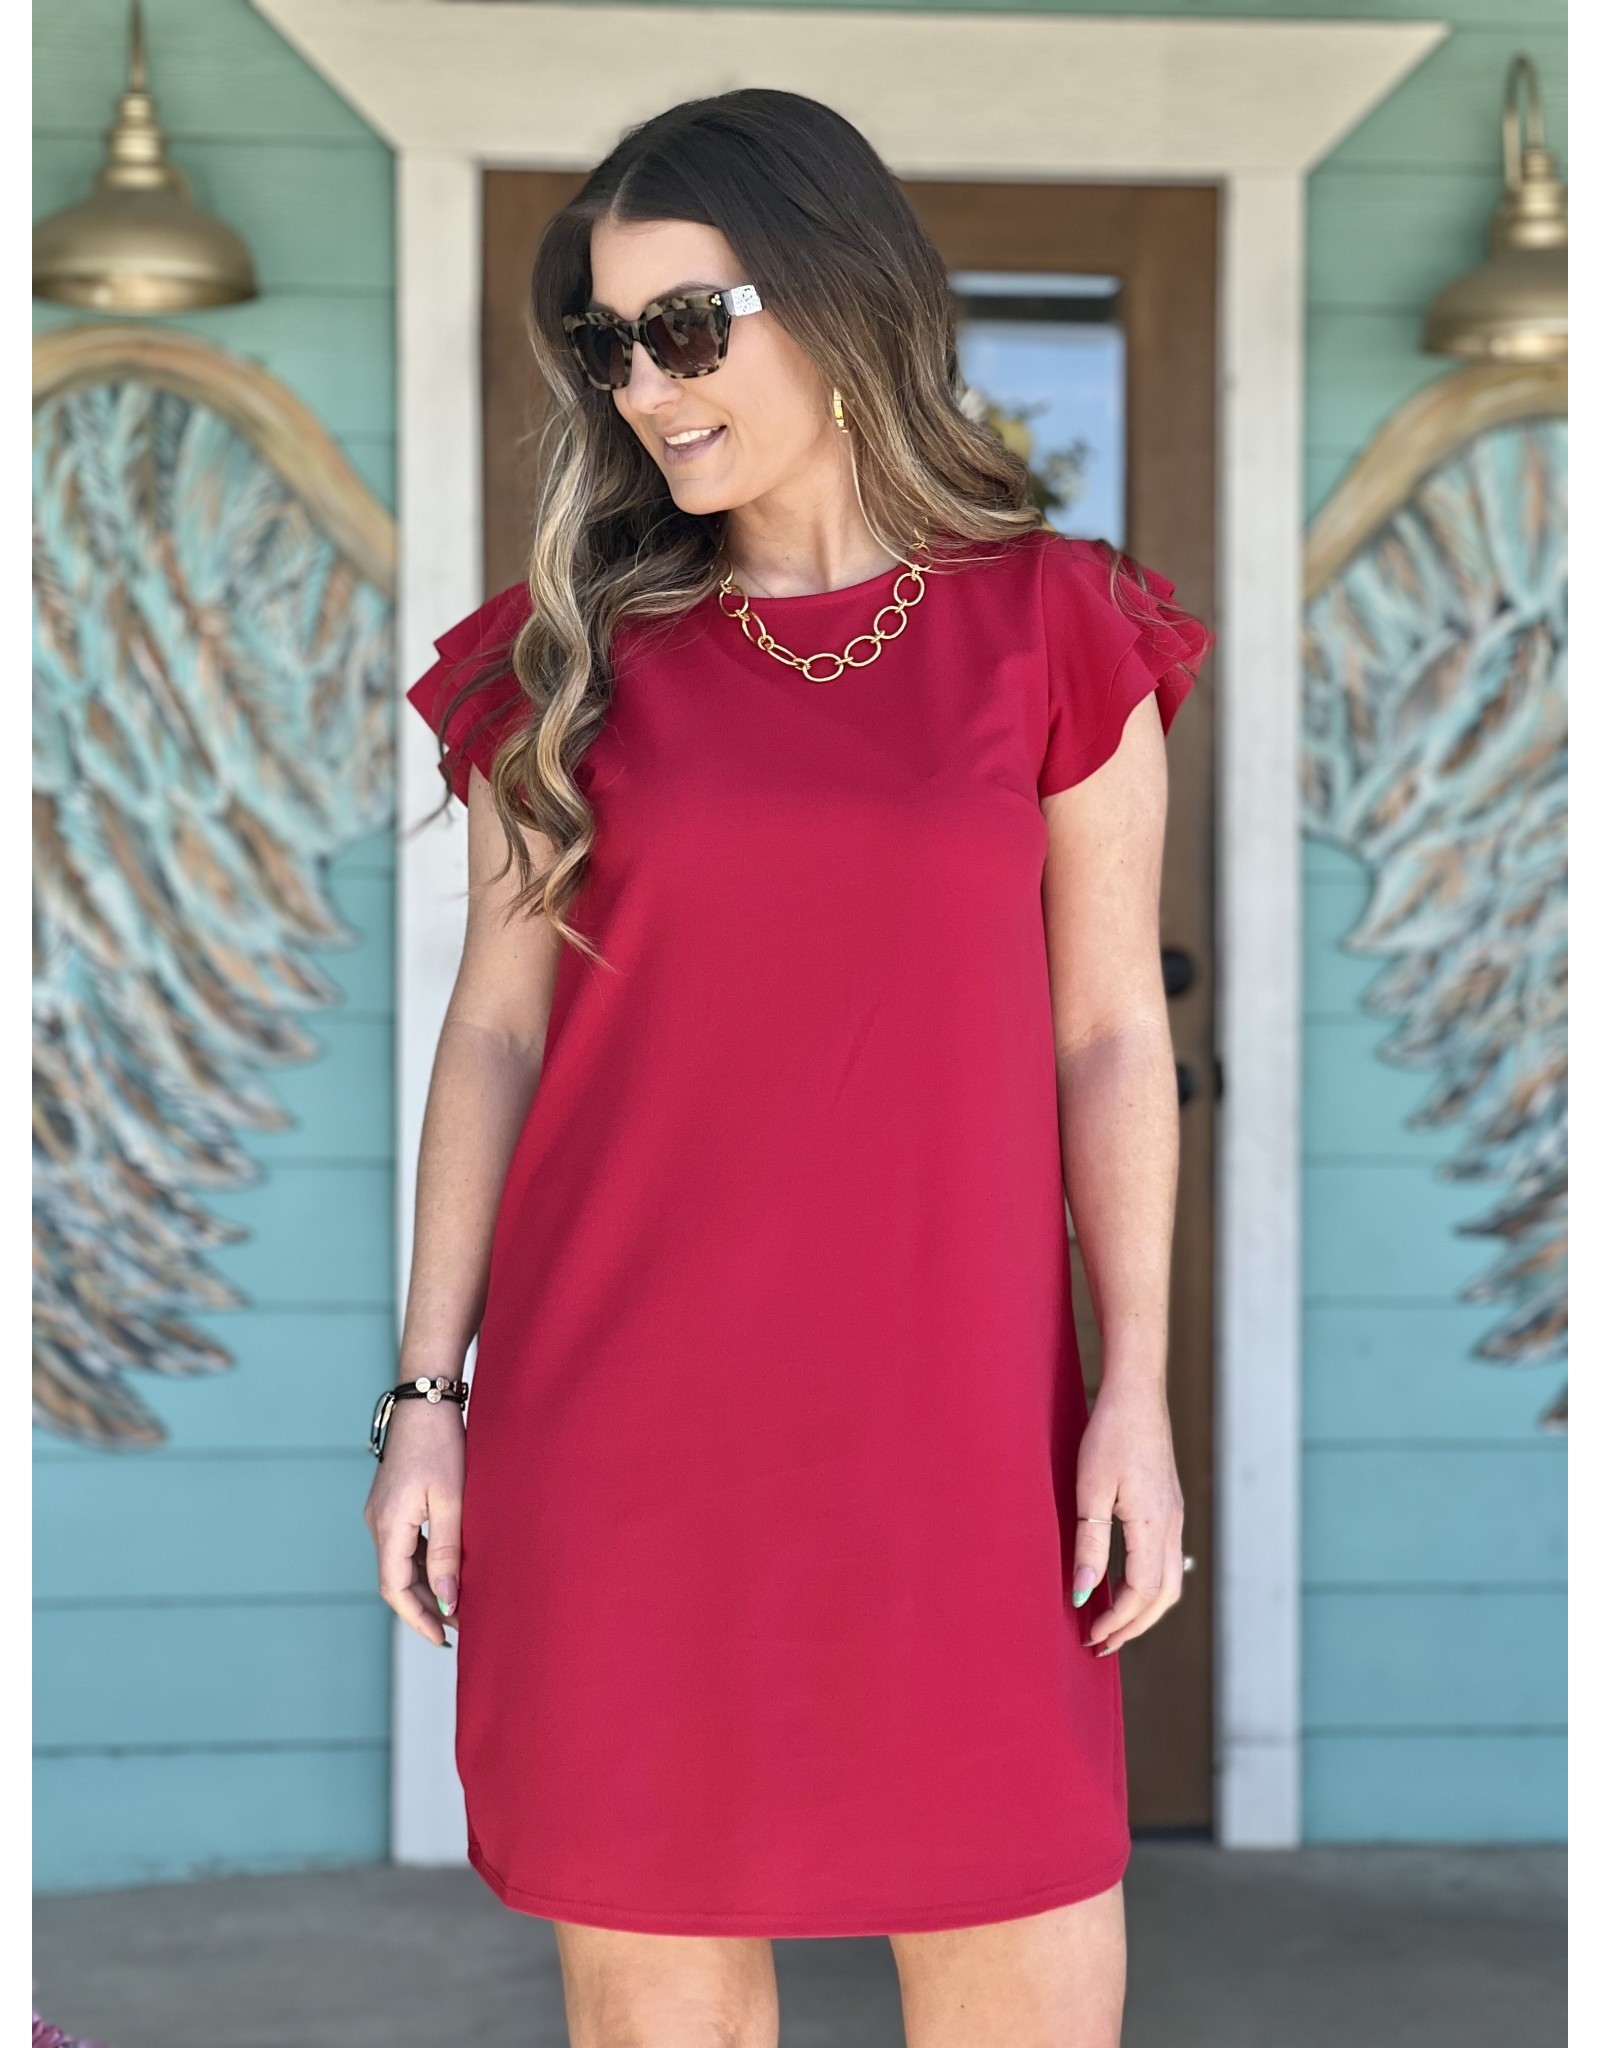 https://cdn.shoplightspeed.com/shops/612314/files/54168353/1600x2048x2/red-flutter-sleeve-dress.jpg